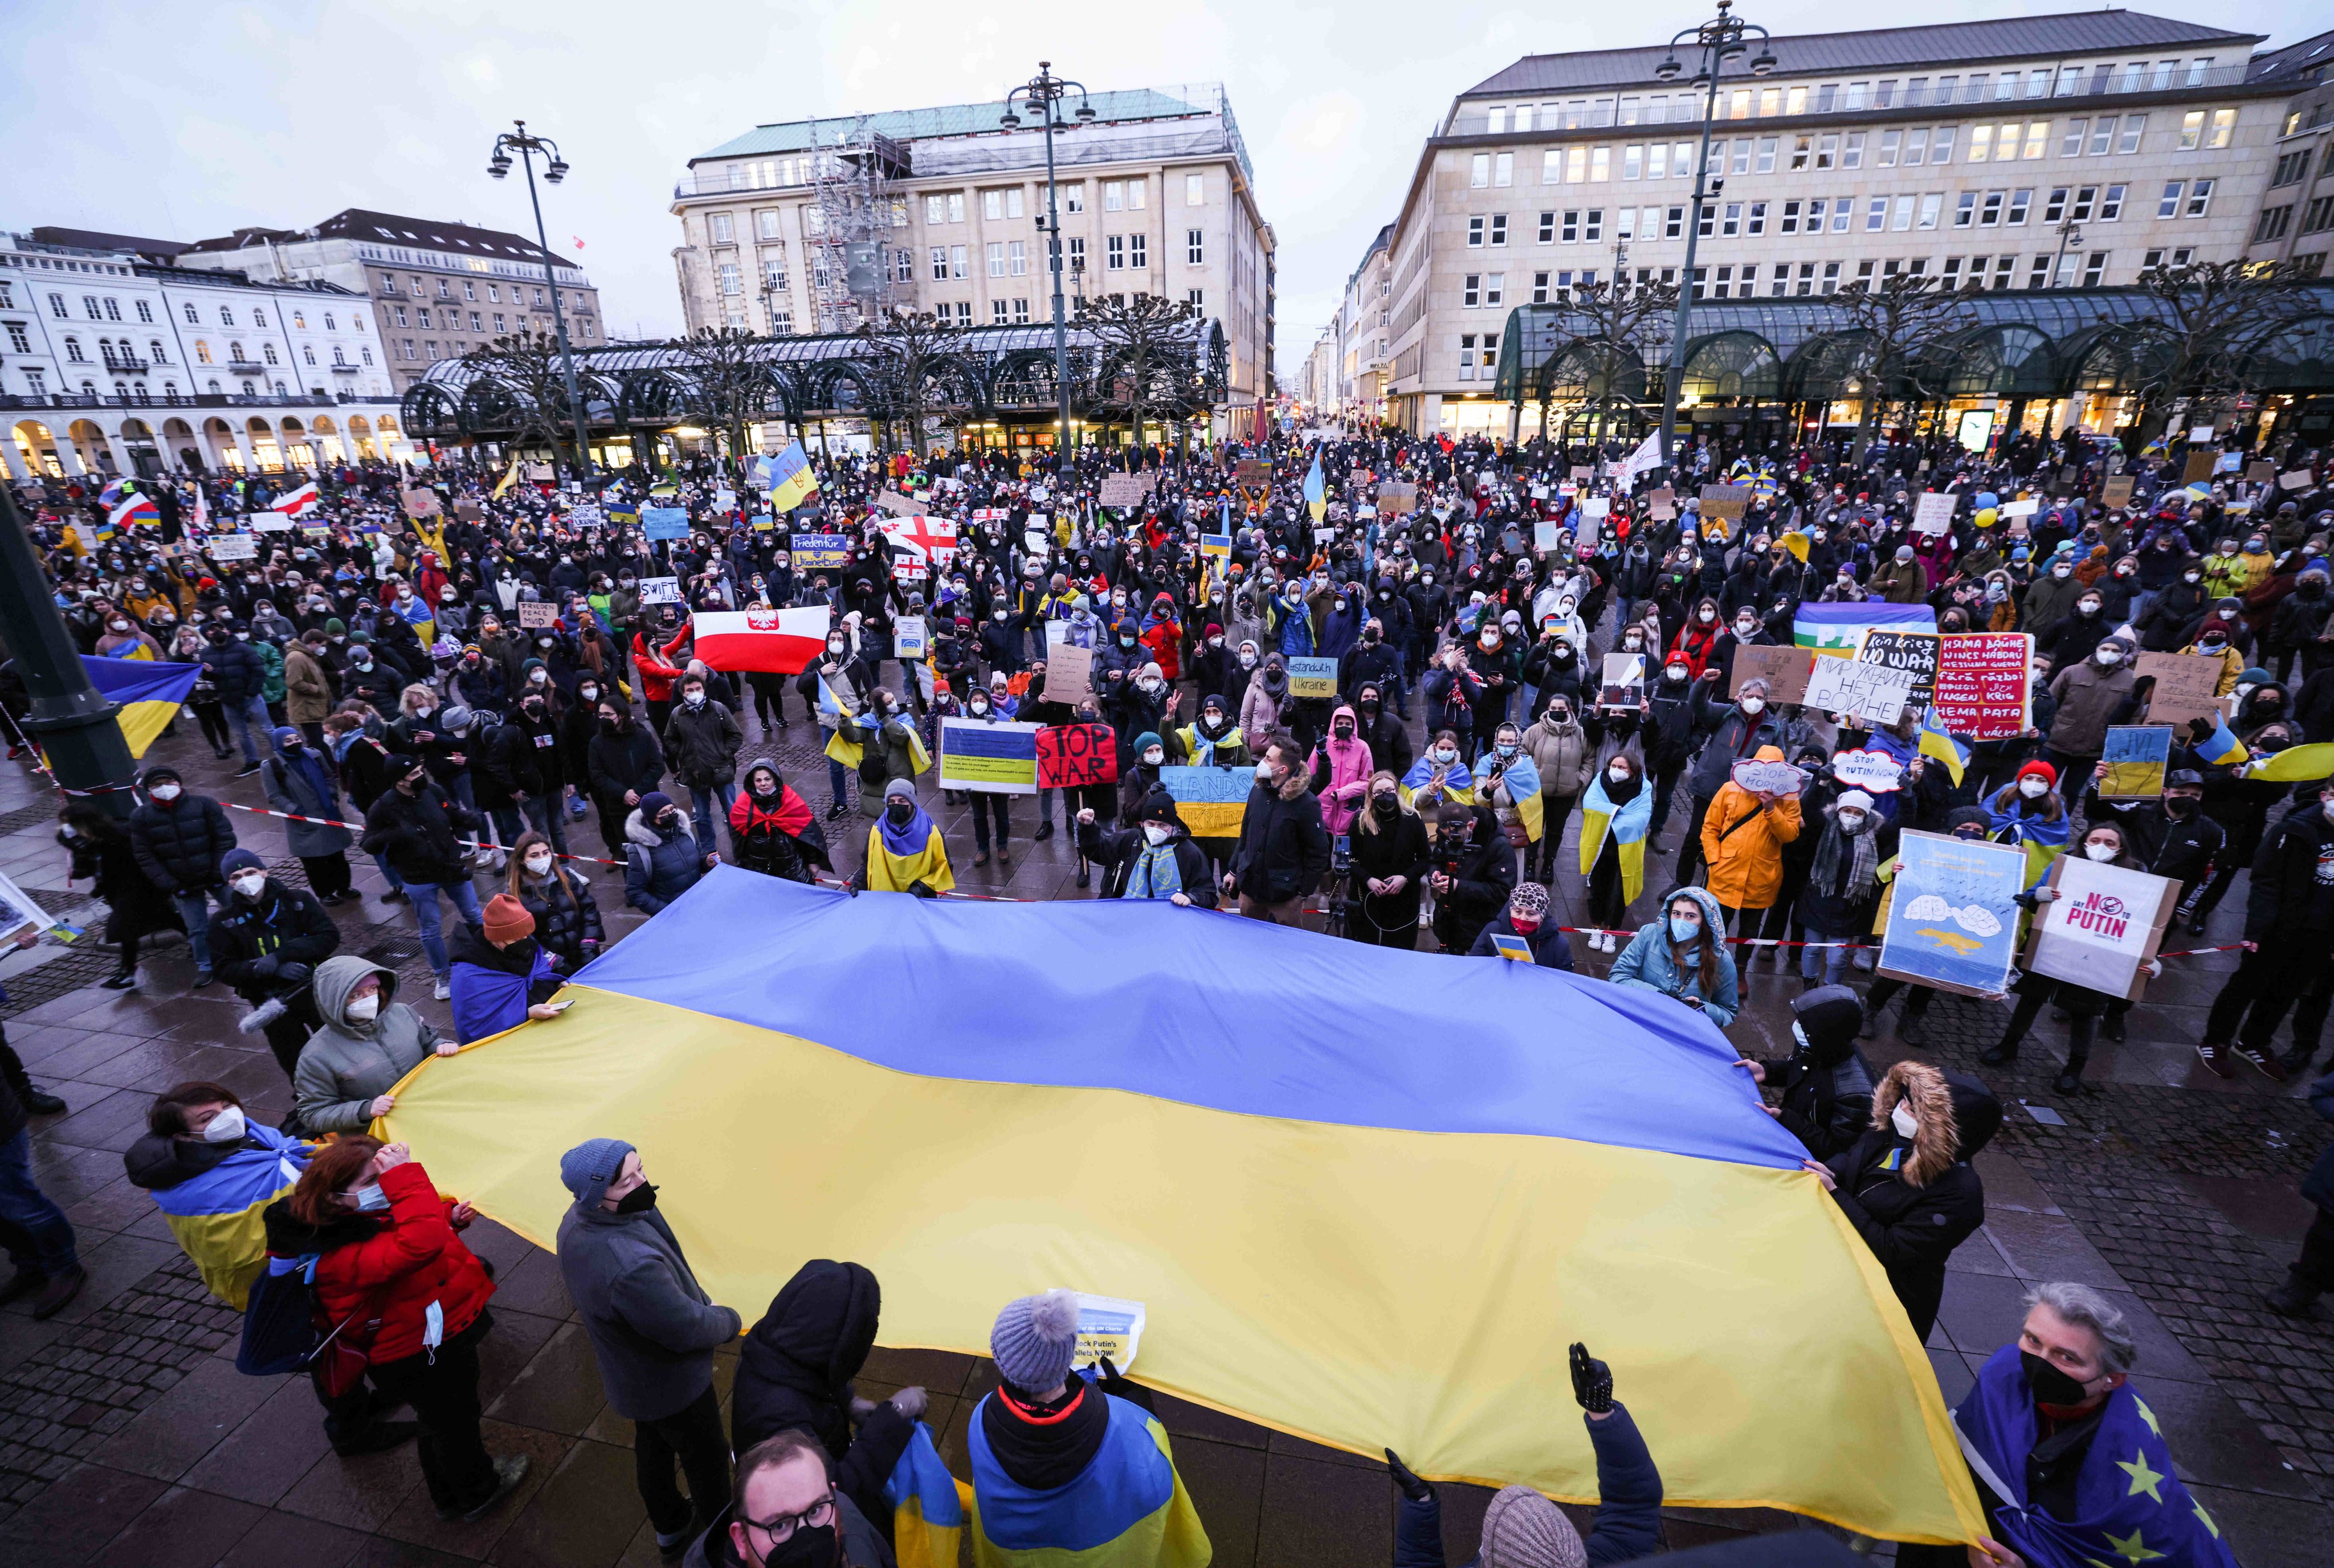 Protestos contra a invasão da Ucrânia em Hamburgo, Alemanha